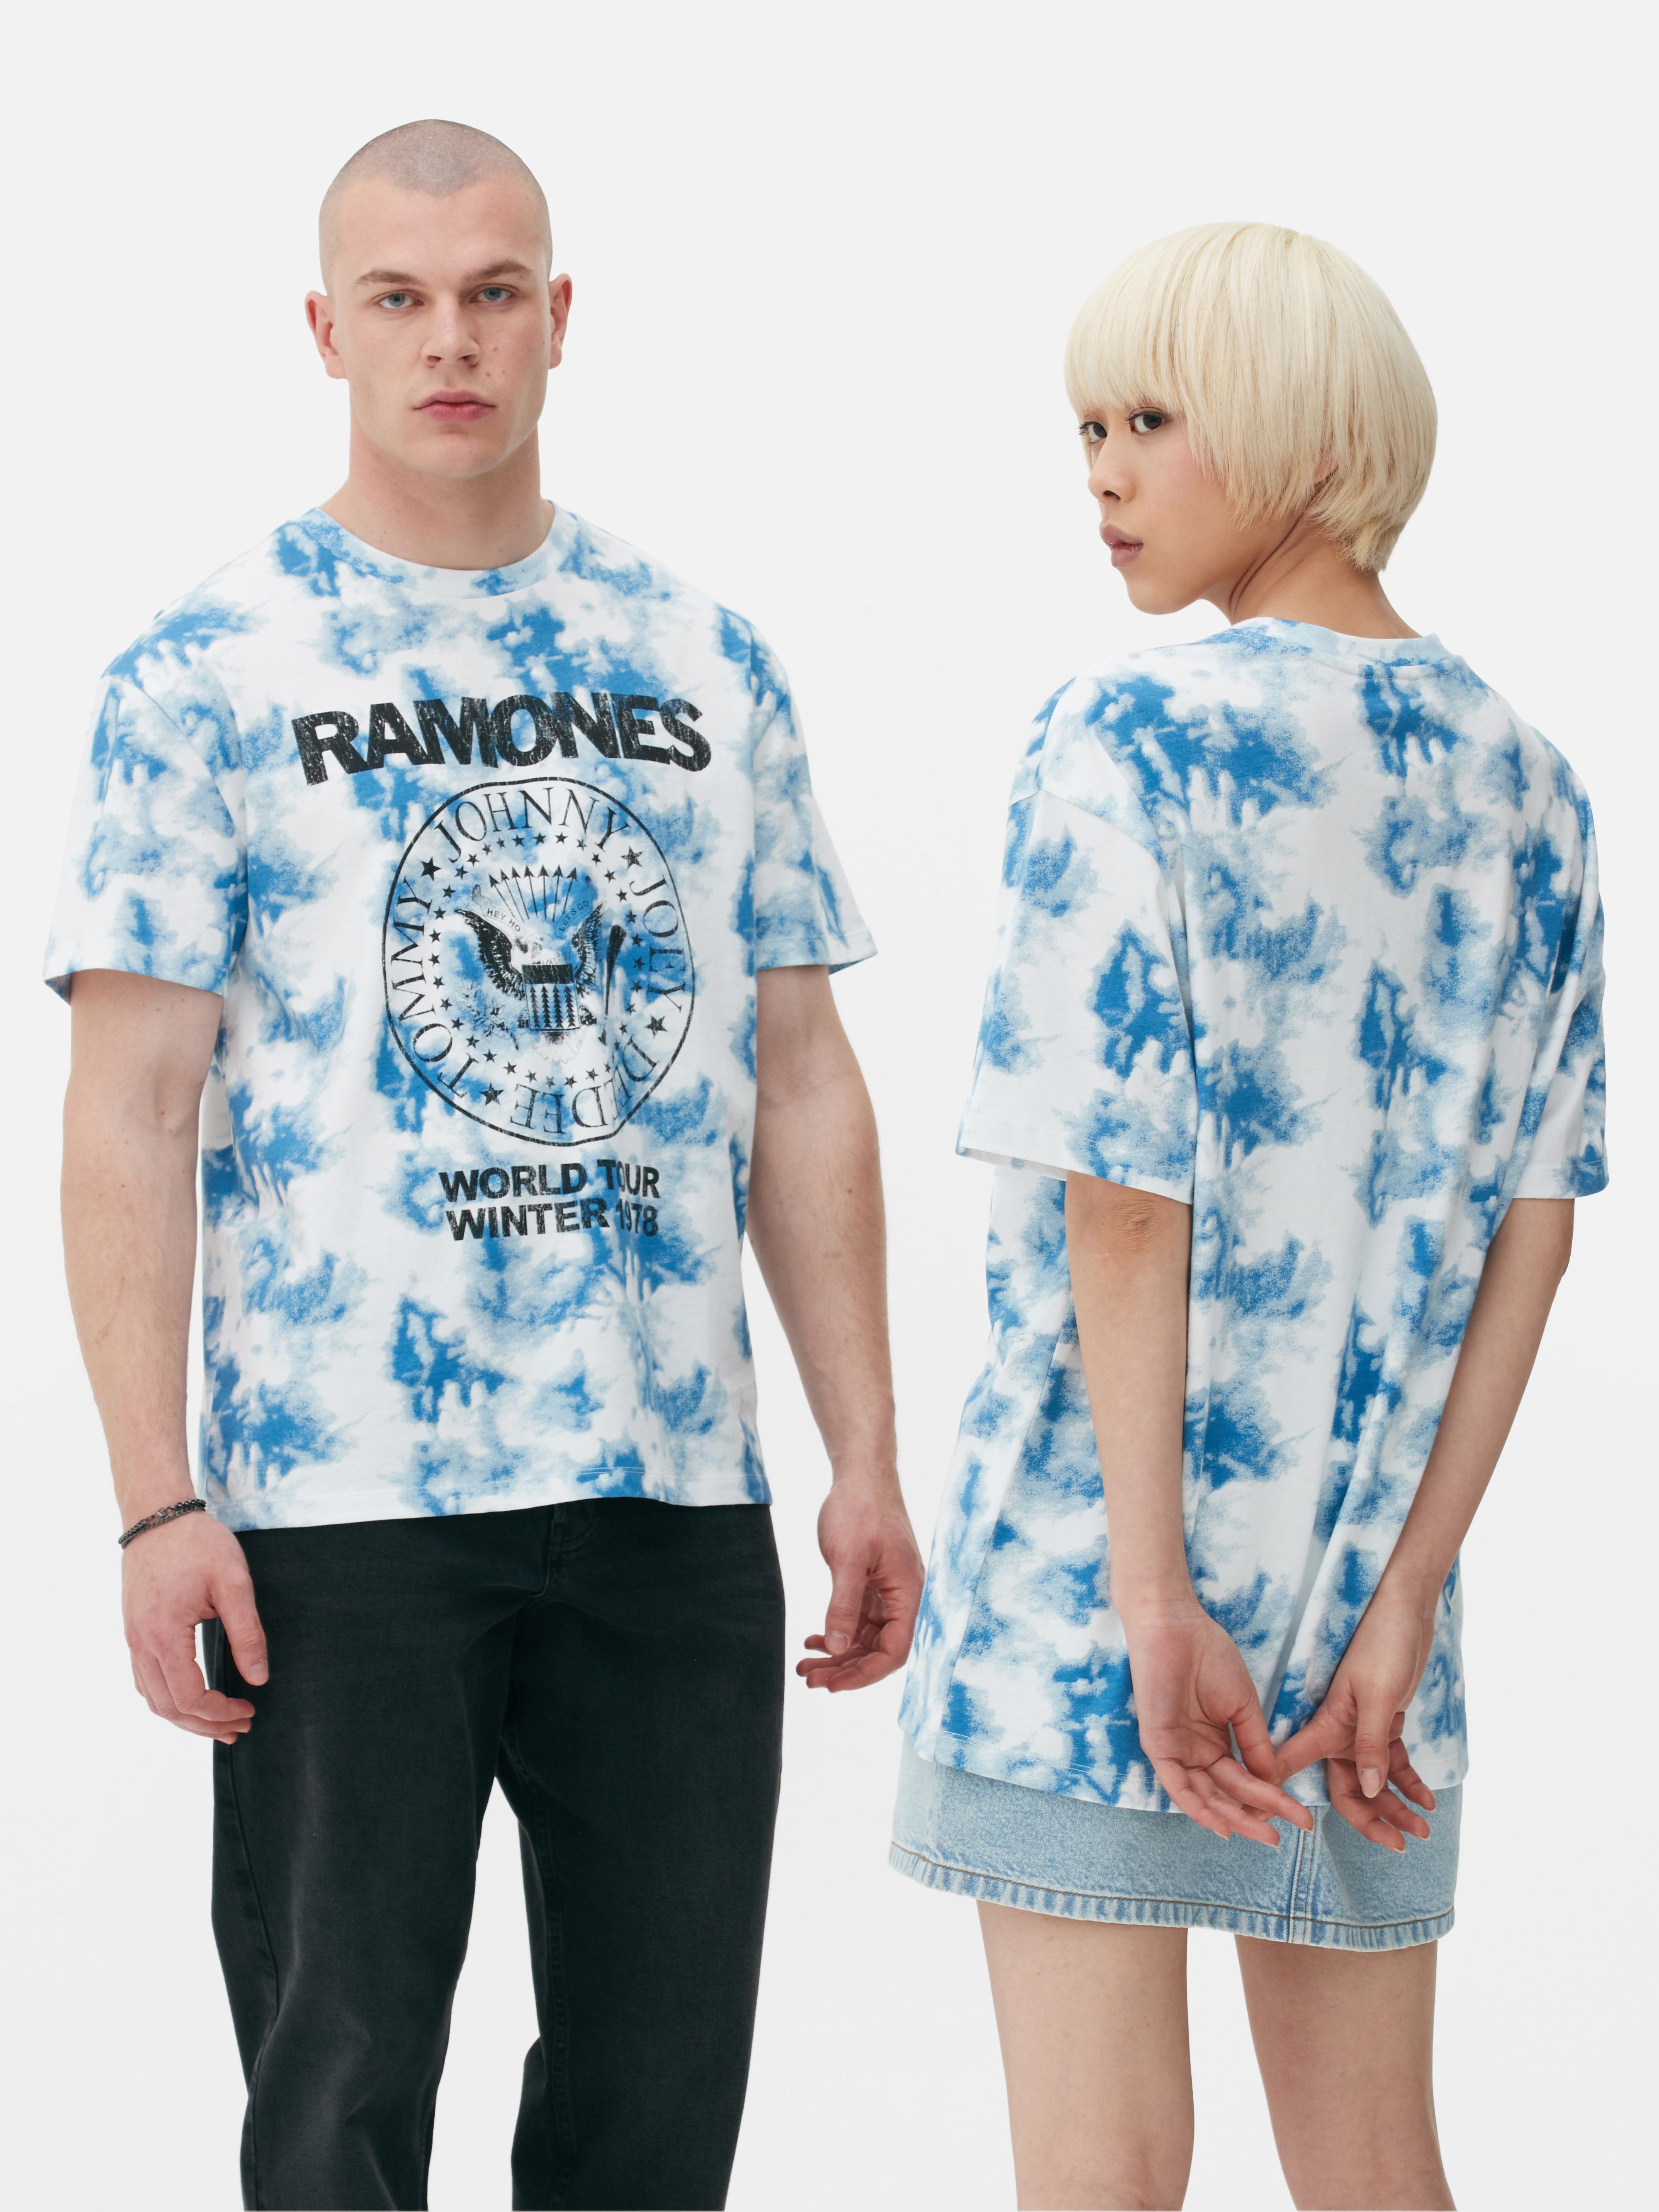 Camiseta tie-dye de Ramones